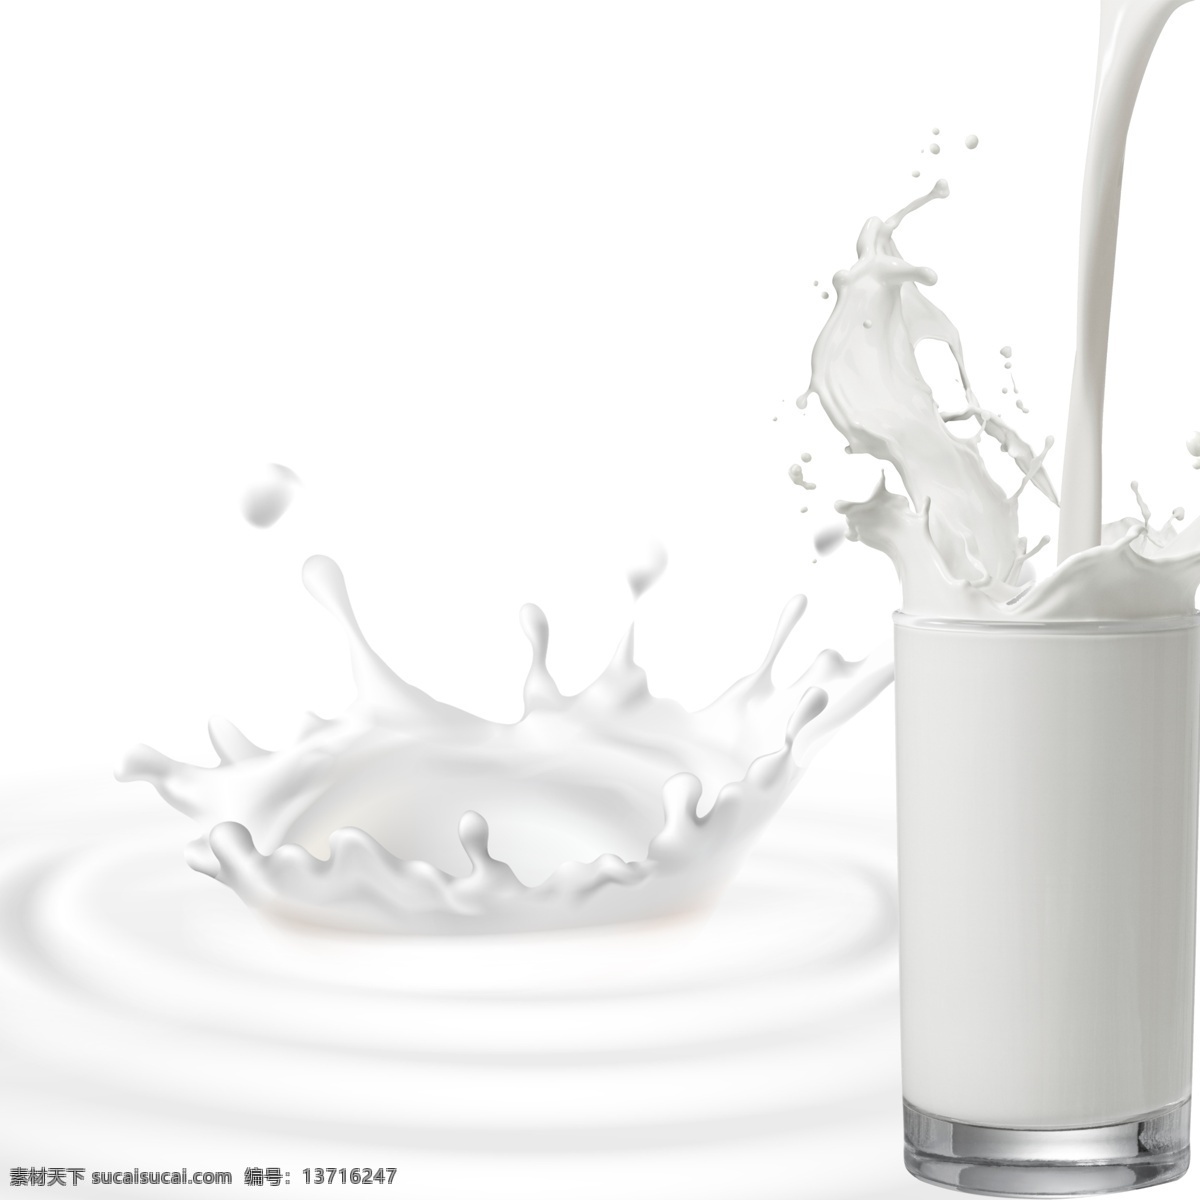 一杯牛奶图片 牛奶 飞溅的牛奶 一杯牛奶 倒牛奶 鲜奶